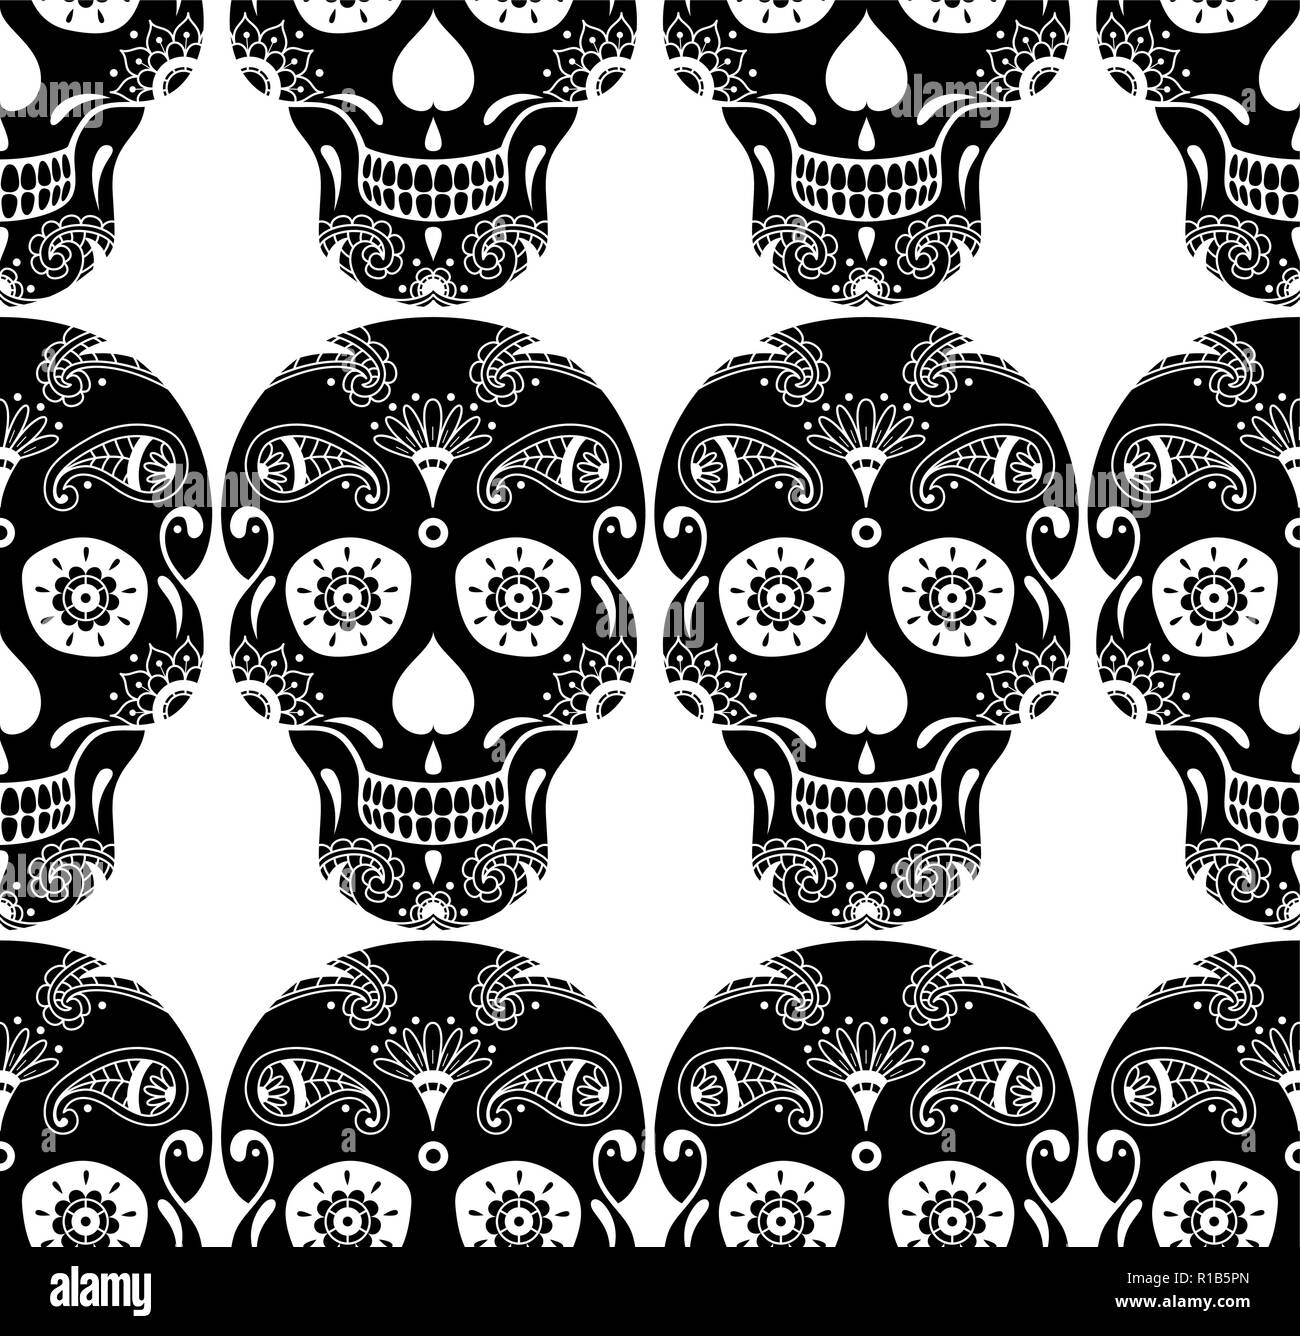 Vector seamless pattern di zucchero nero cranio con doodle motivo floreale su sfondo bianco. Illustrazione messicano per il Giorno dei Morti Illustrazione Vettoriale